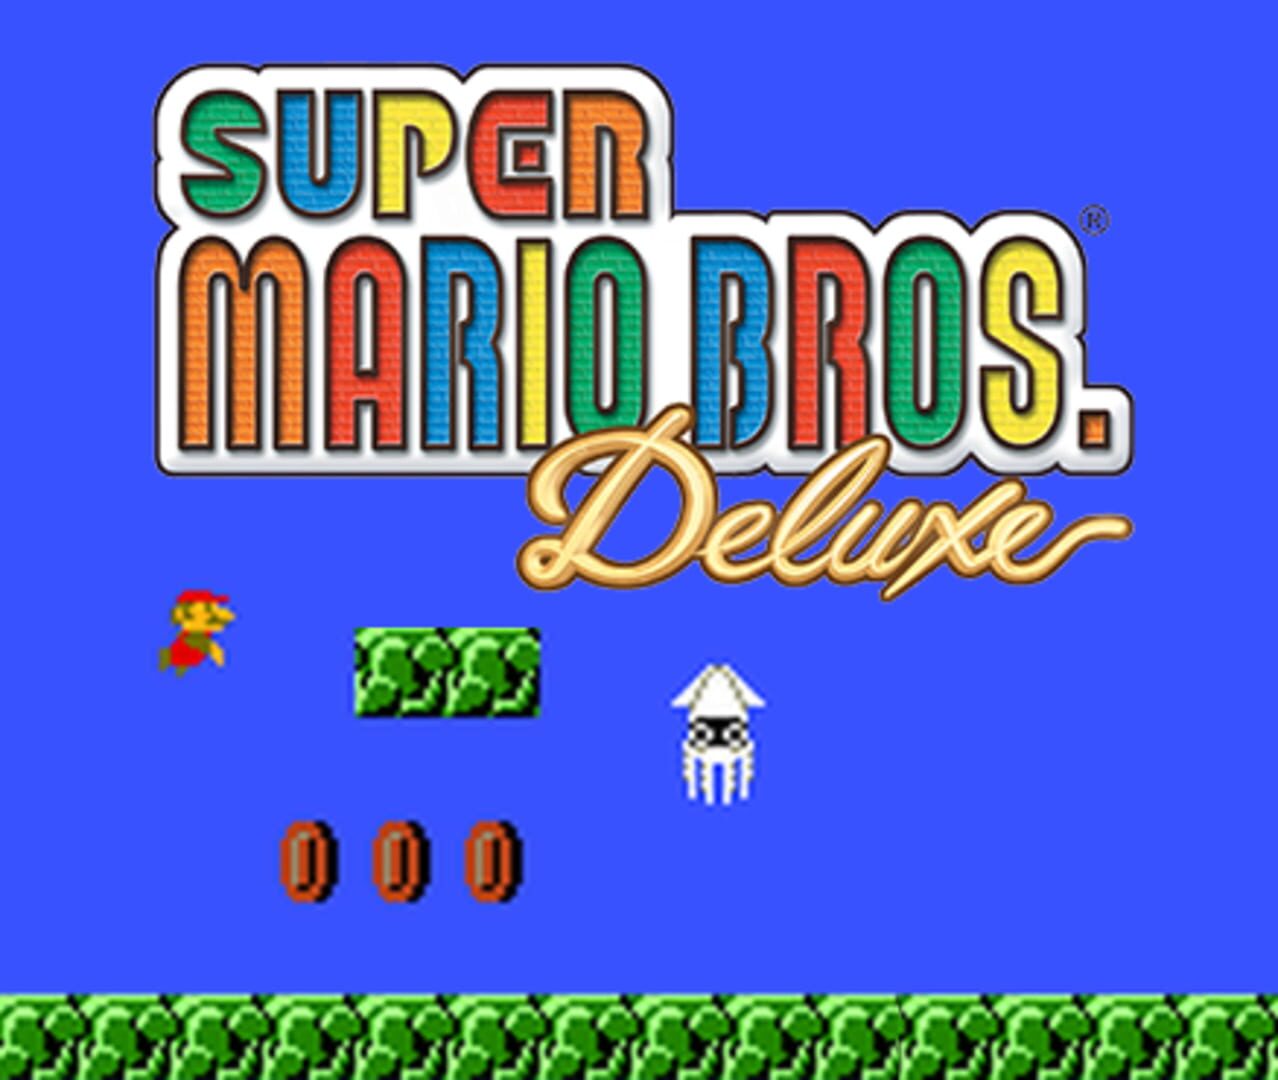 Super Mario Bros. Deluxe Image